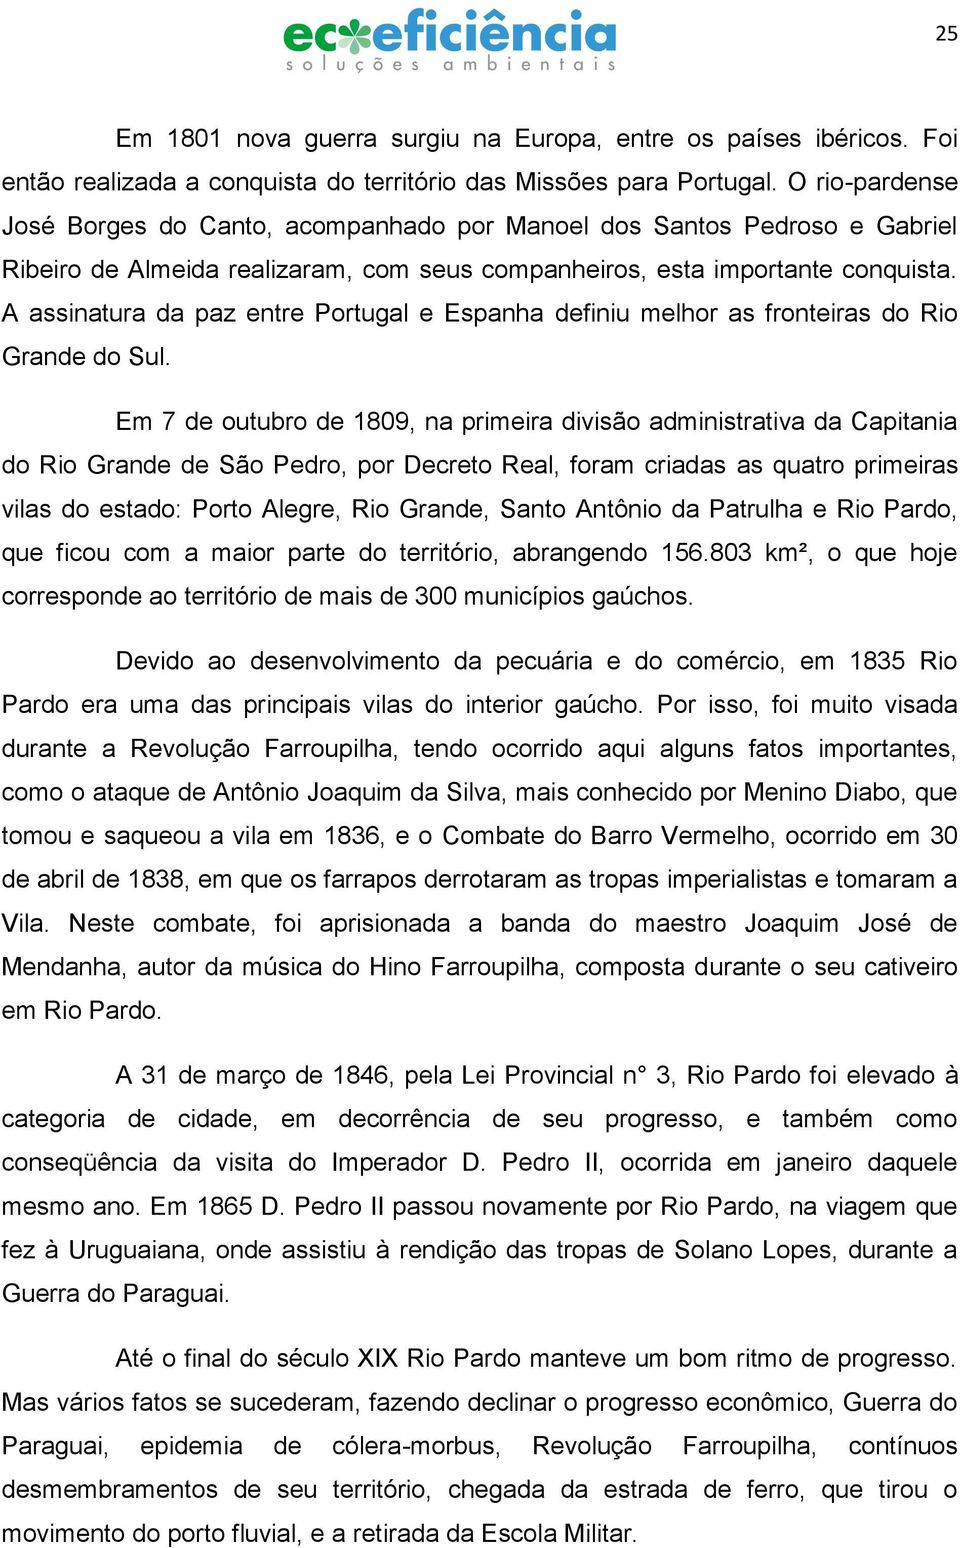 A assinatura da paz entre Portugal e Espanha definiu melhor as fronteiras do Rio Grande do Sul.